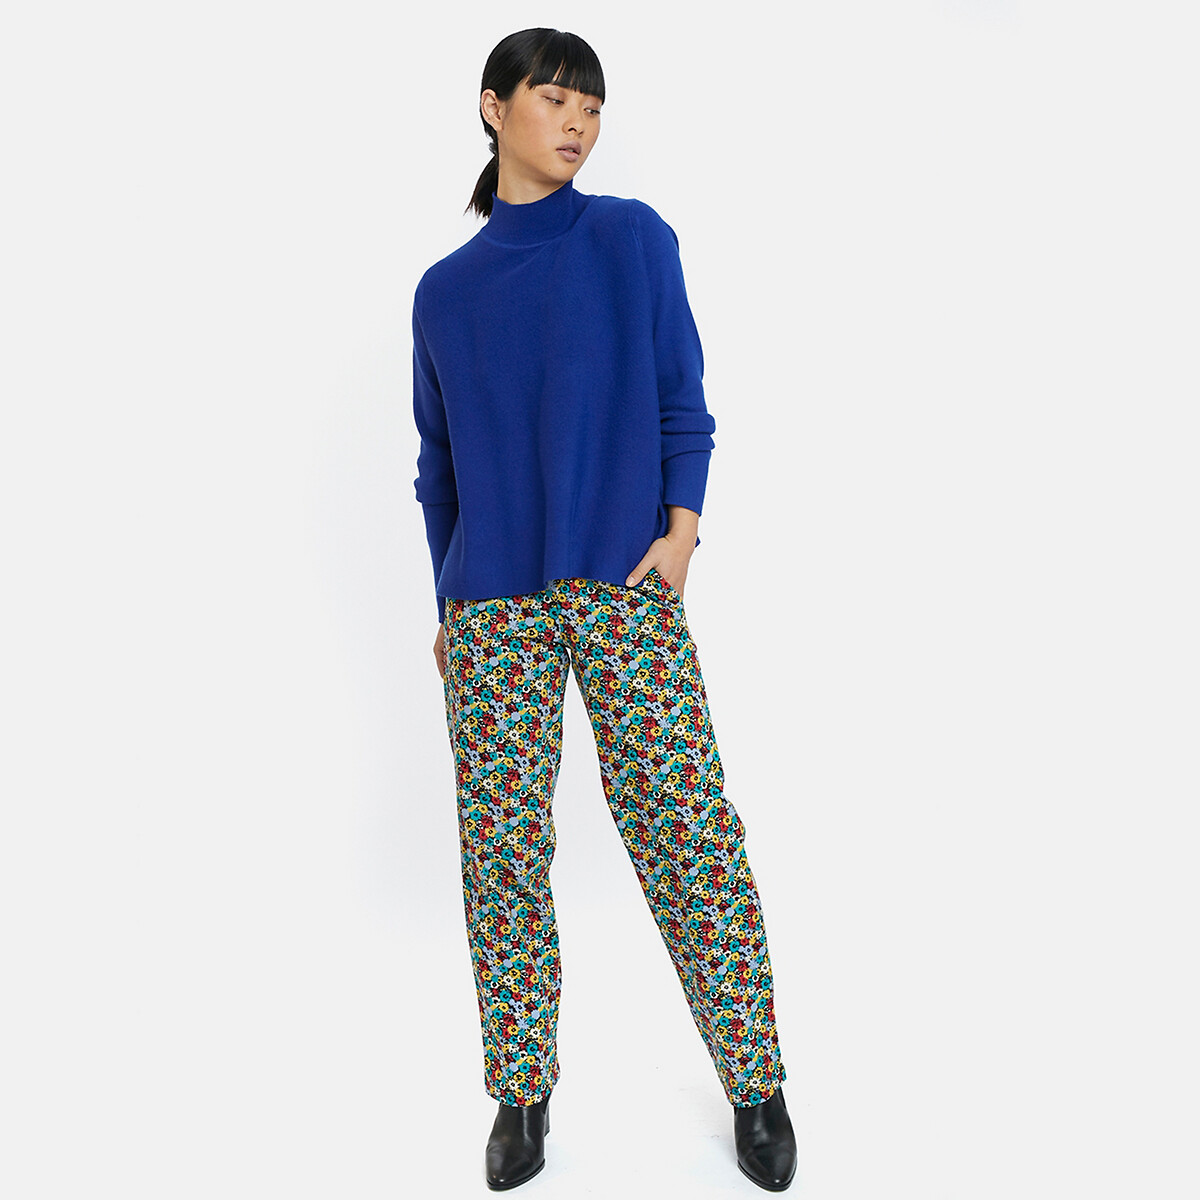 Пуловер La Redoute С воротником-стойкой широкий покрой S синий, размер S - фото 4